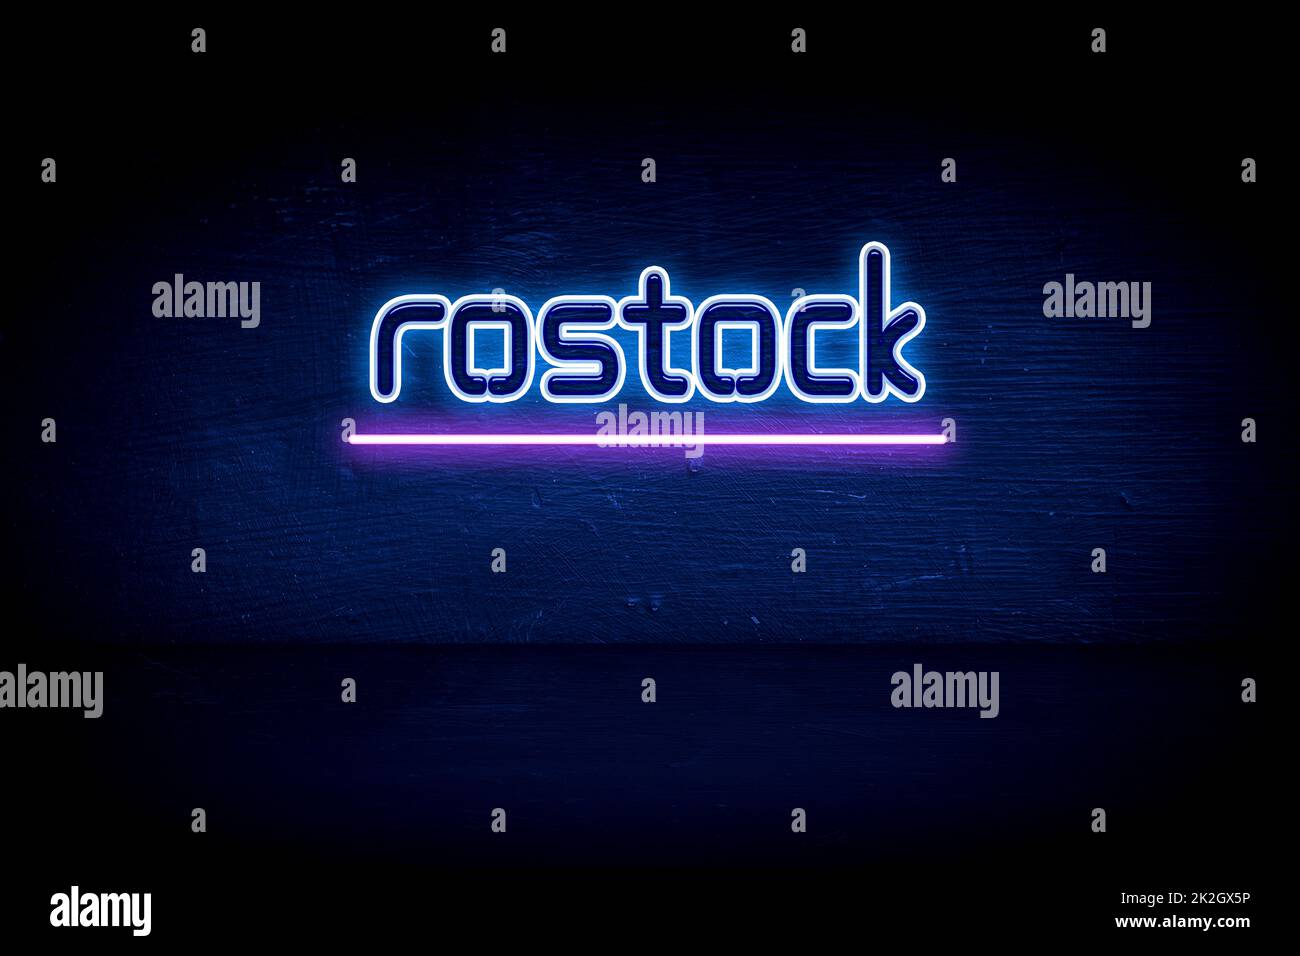 Rostock - panneau d'annonce au néon bleu Banque D'Images